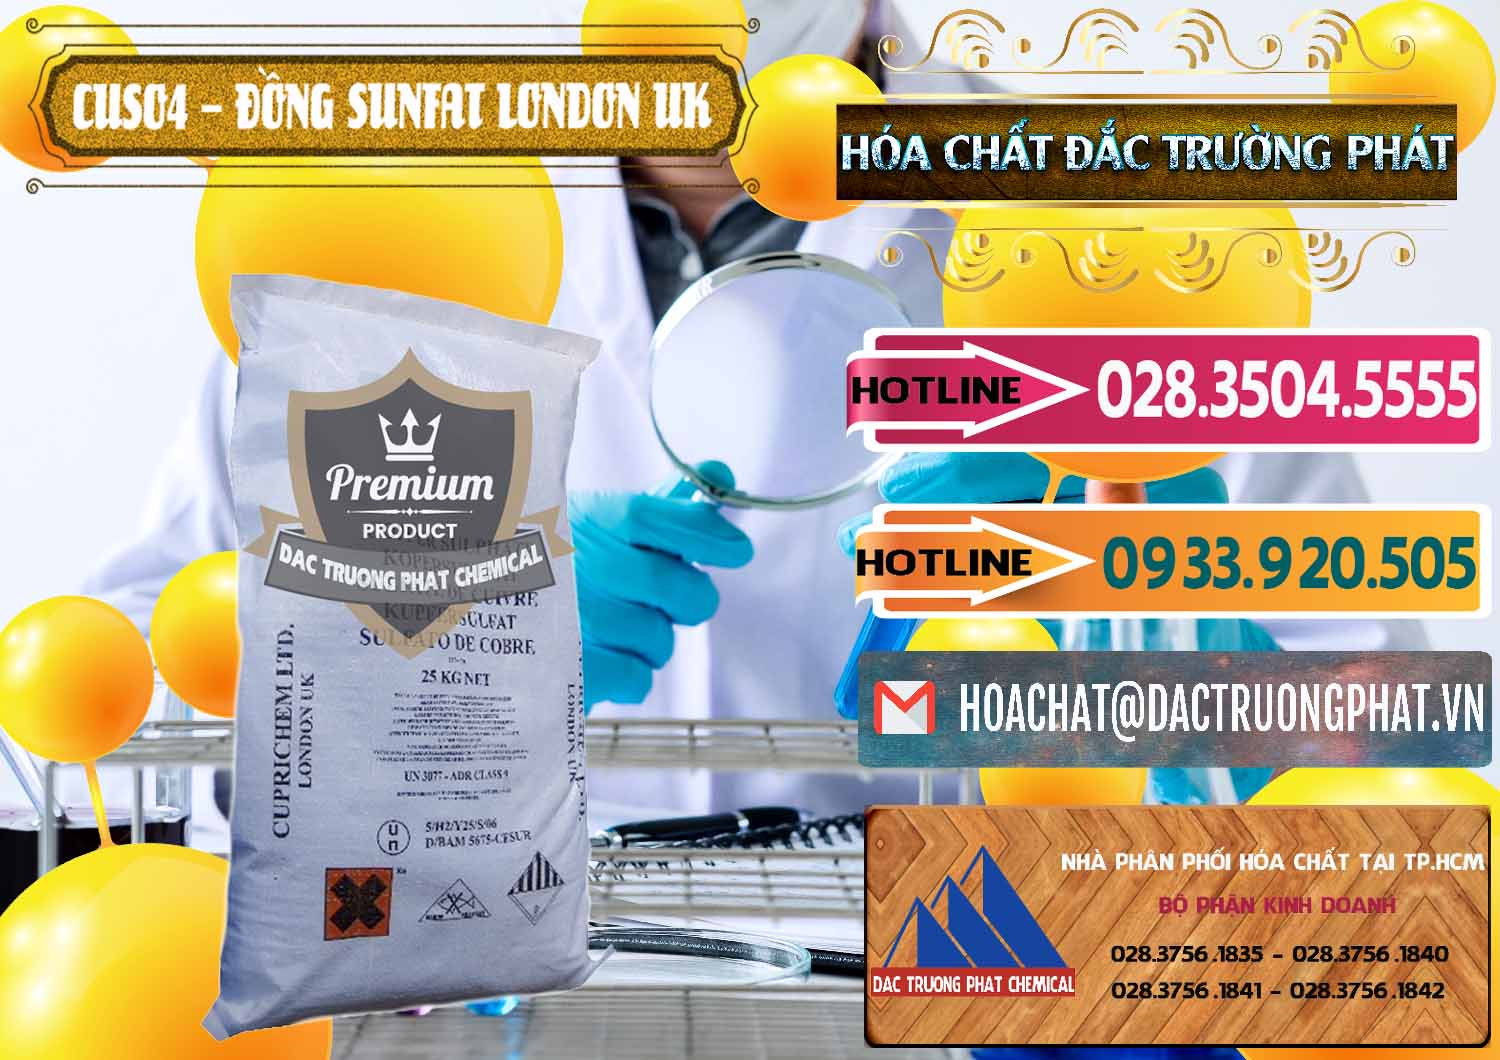 Nơi nhập khẩu và bán CuSO4 – Đồng Sunfat Anh Uk Kingdoms - 0478 - Công ty kinh doanh và phân phối hóa chất tại TP.HCM - dactruongphat.vn